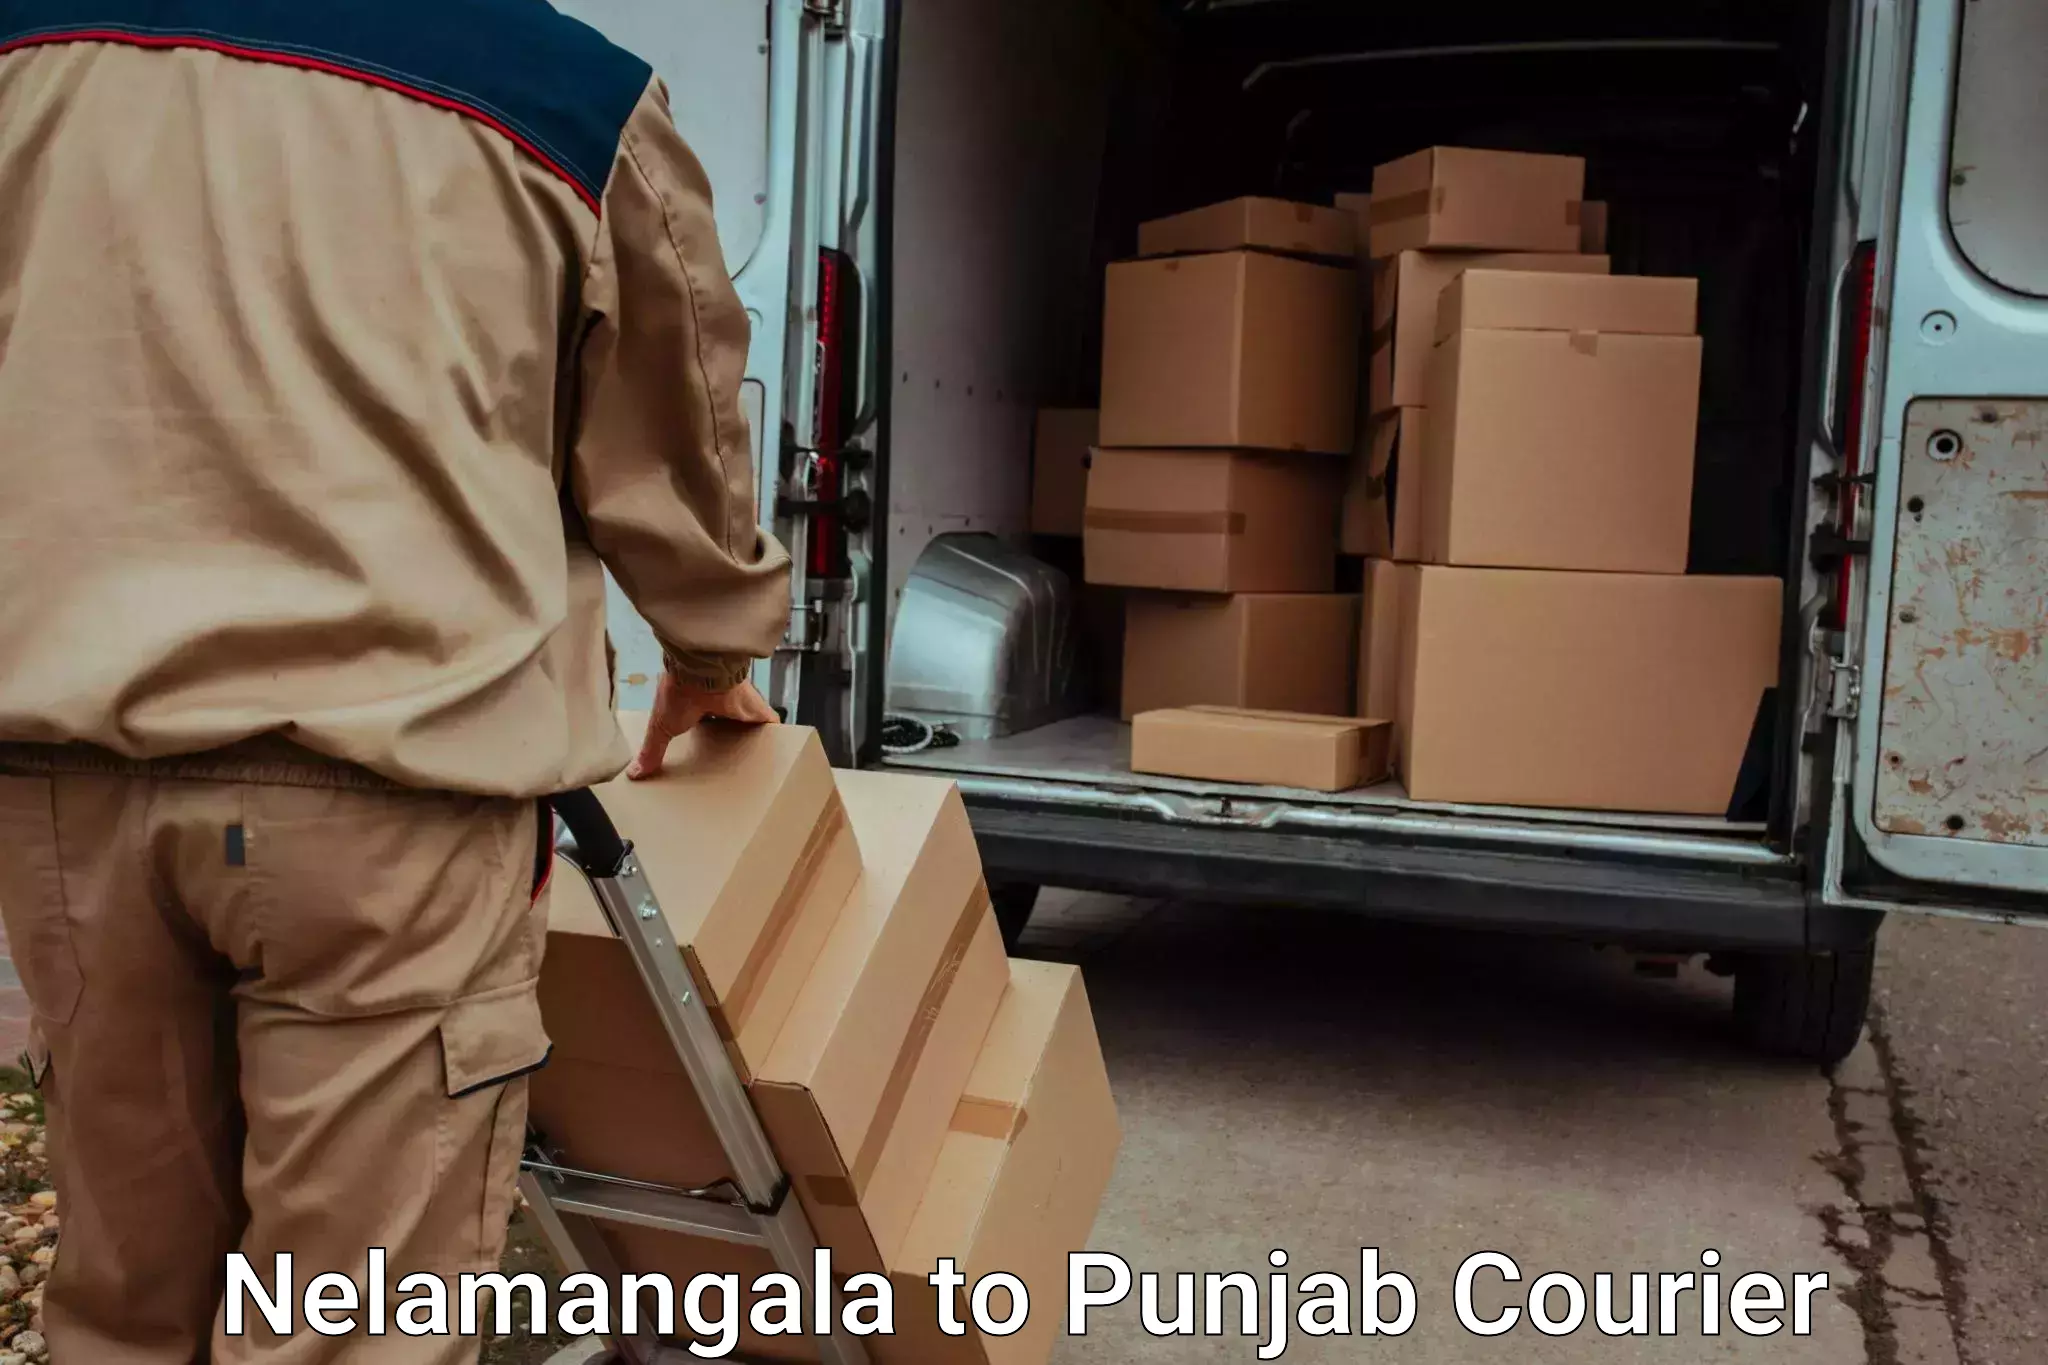 Luggage transport consultancy Nelamangala to Ajnala